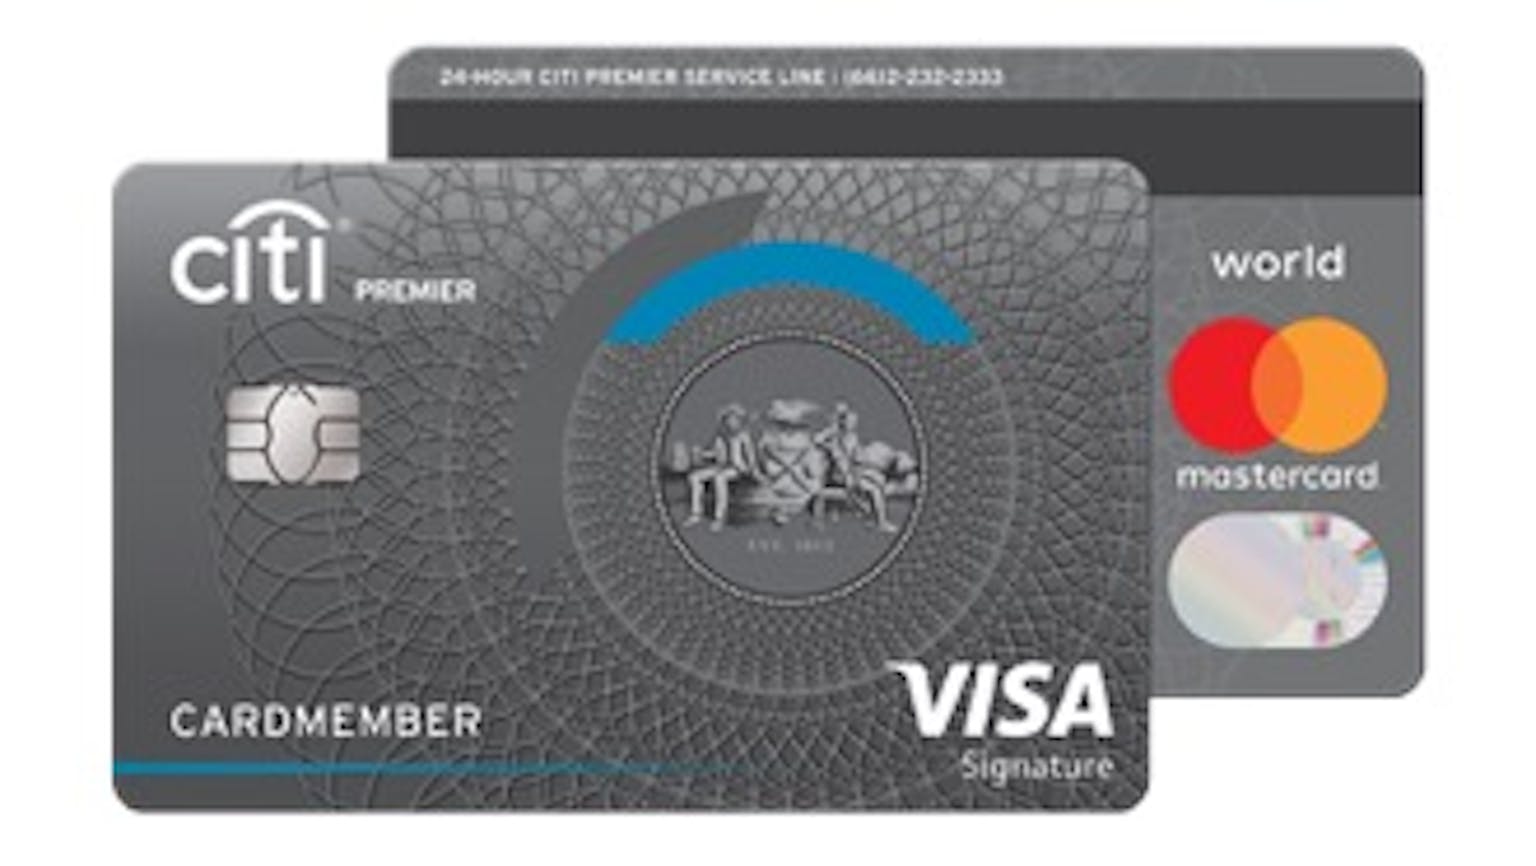 ทำบัตรเครดิตของซิตี้แบงค์ดีไหม | Moneyduck Thailand